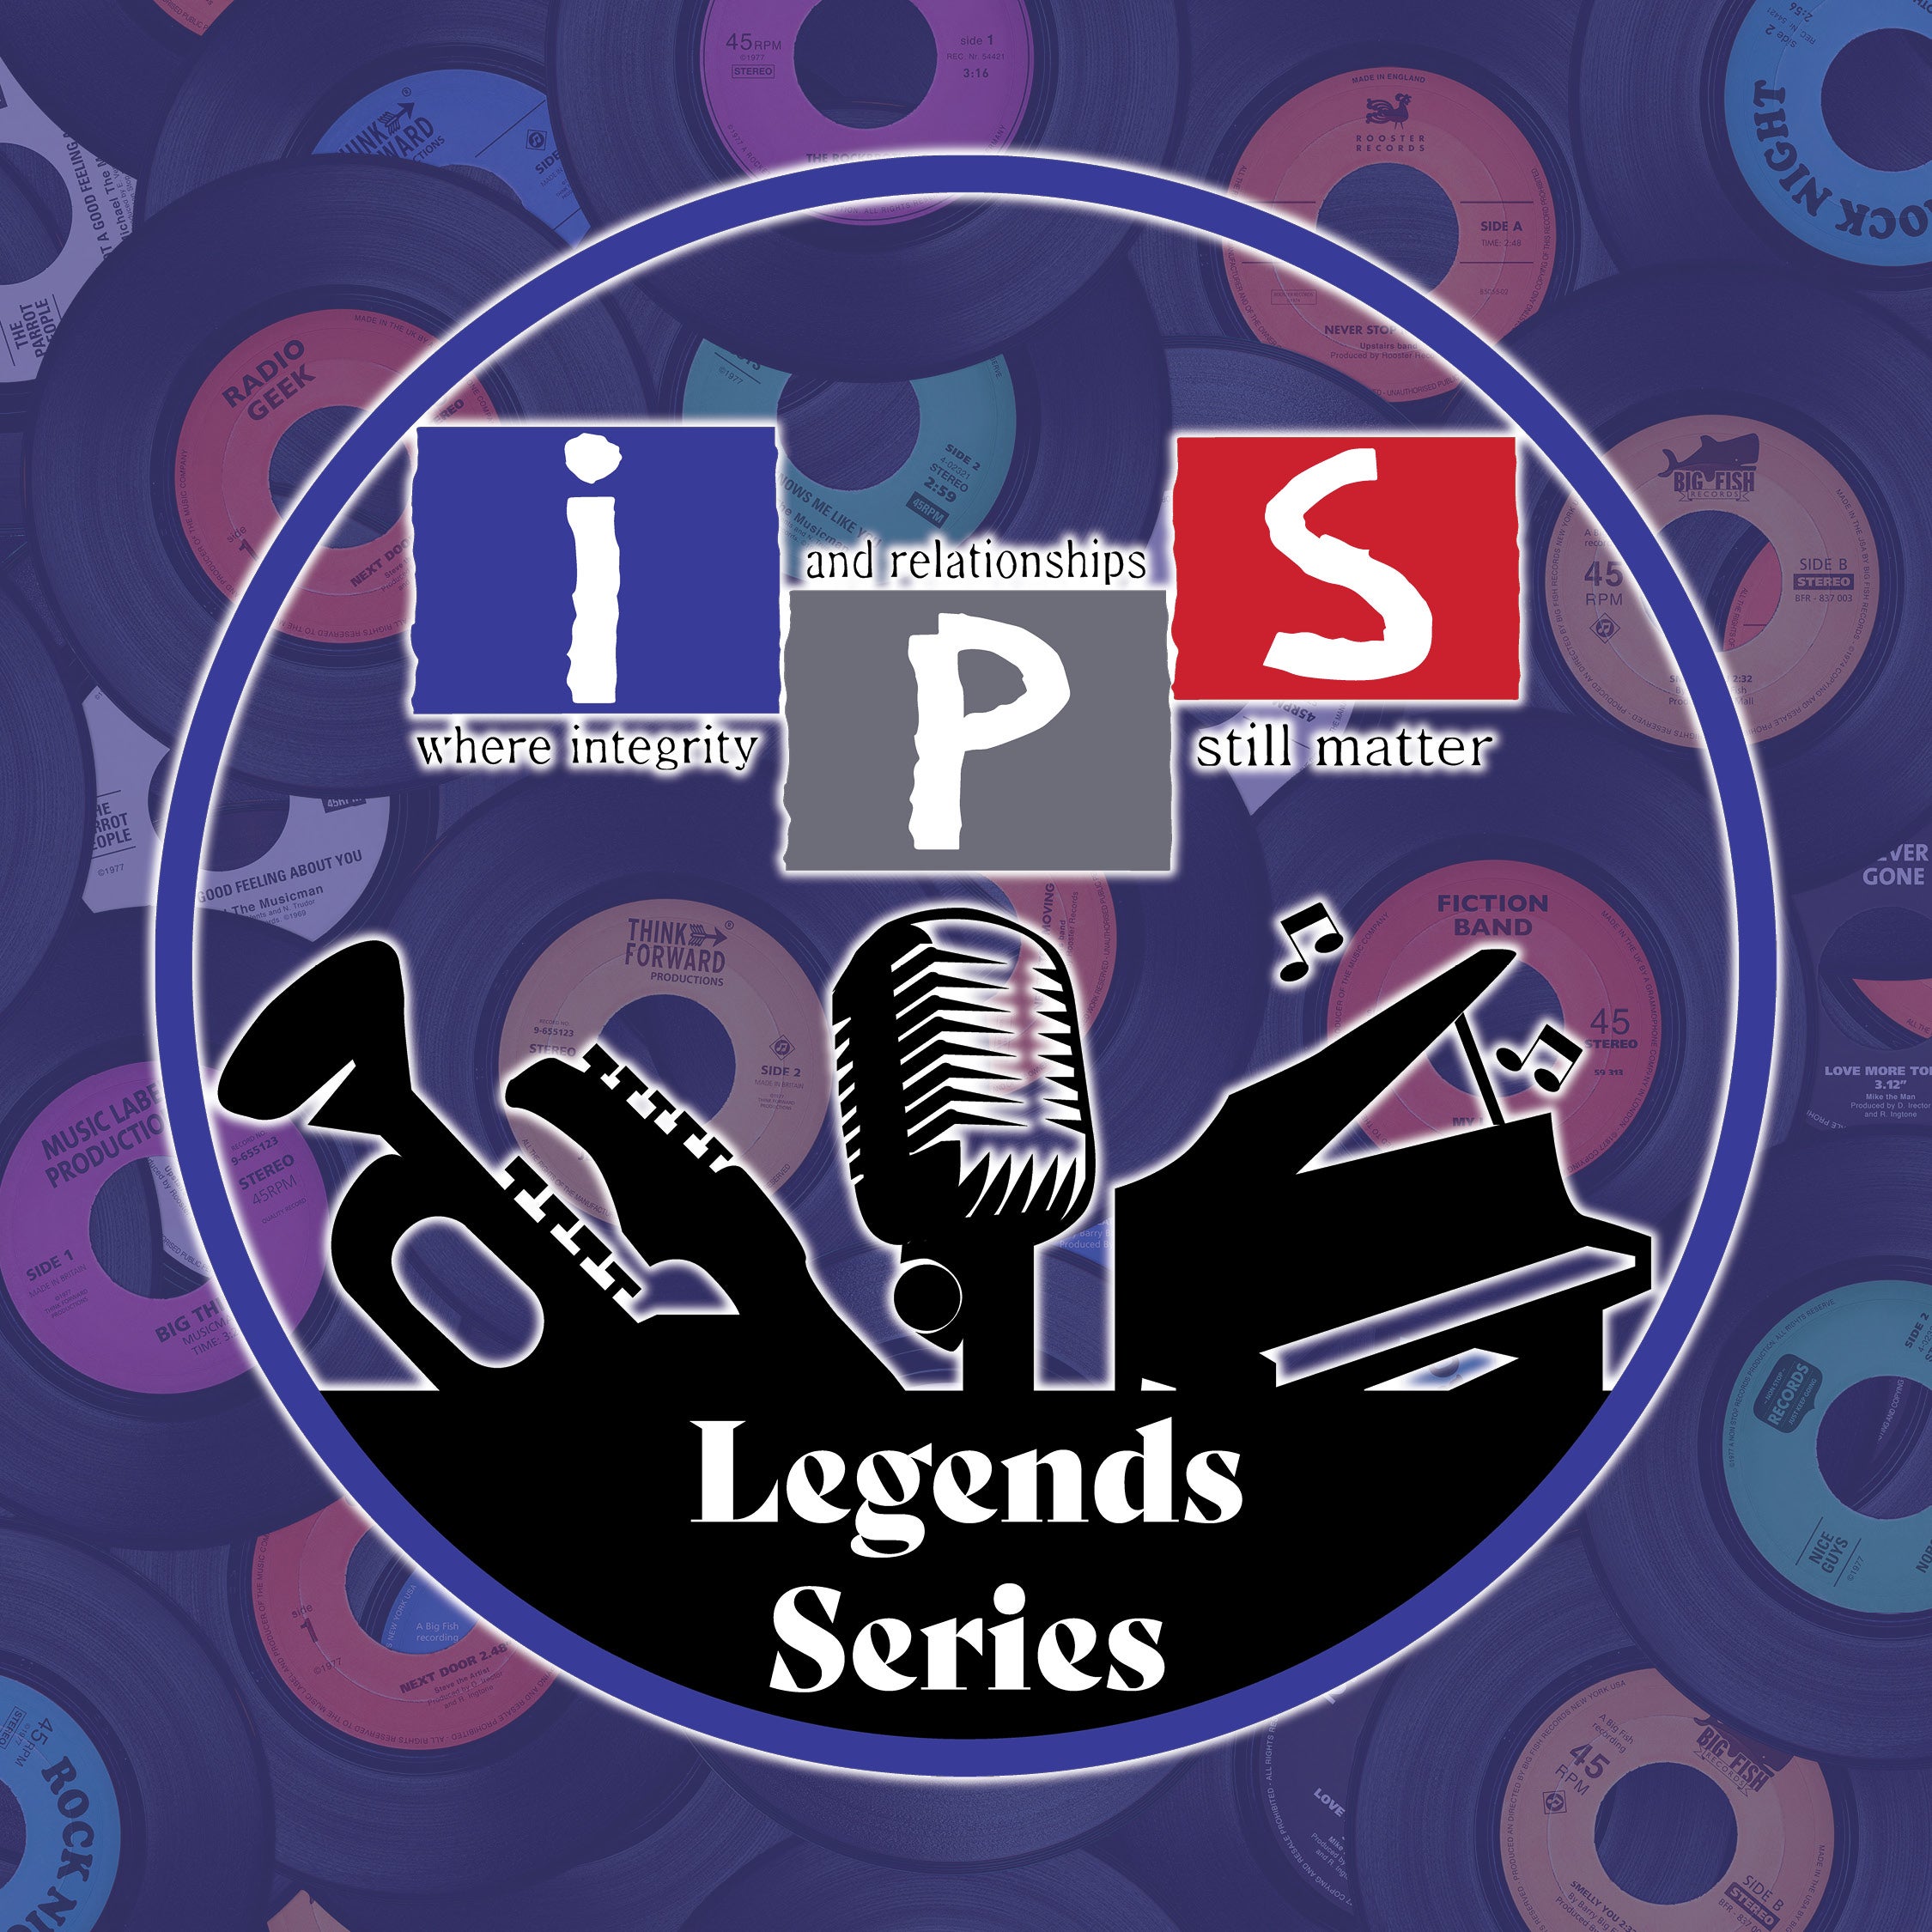 IPS Legends Series for website.jpg